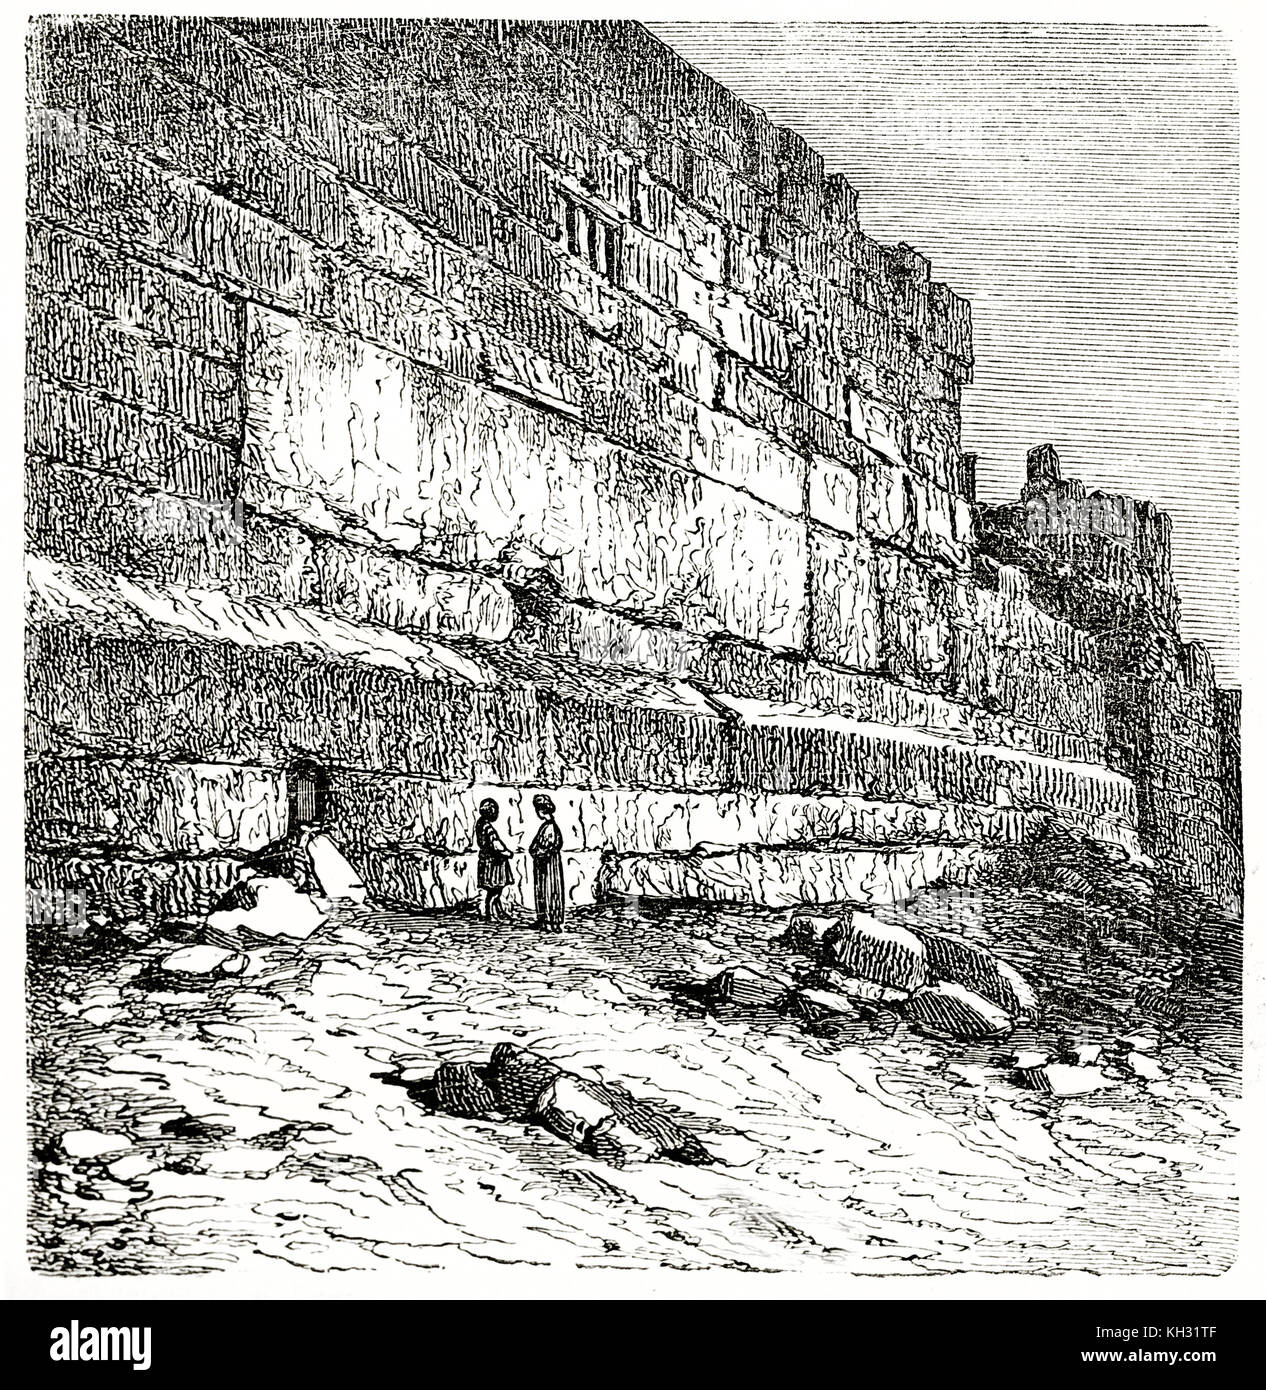 Old view of the Trilithon in Baalbek, Lebanon. By De Bar after Hachette, publ. on le Tour du Monde, Paris, 1863 Stock Photo